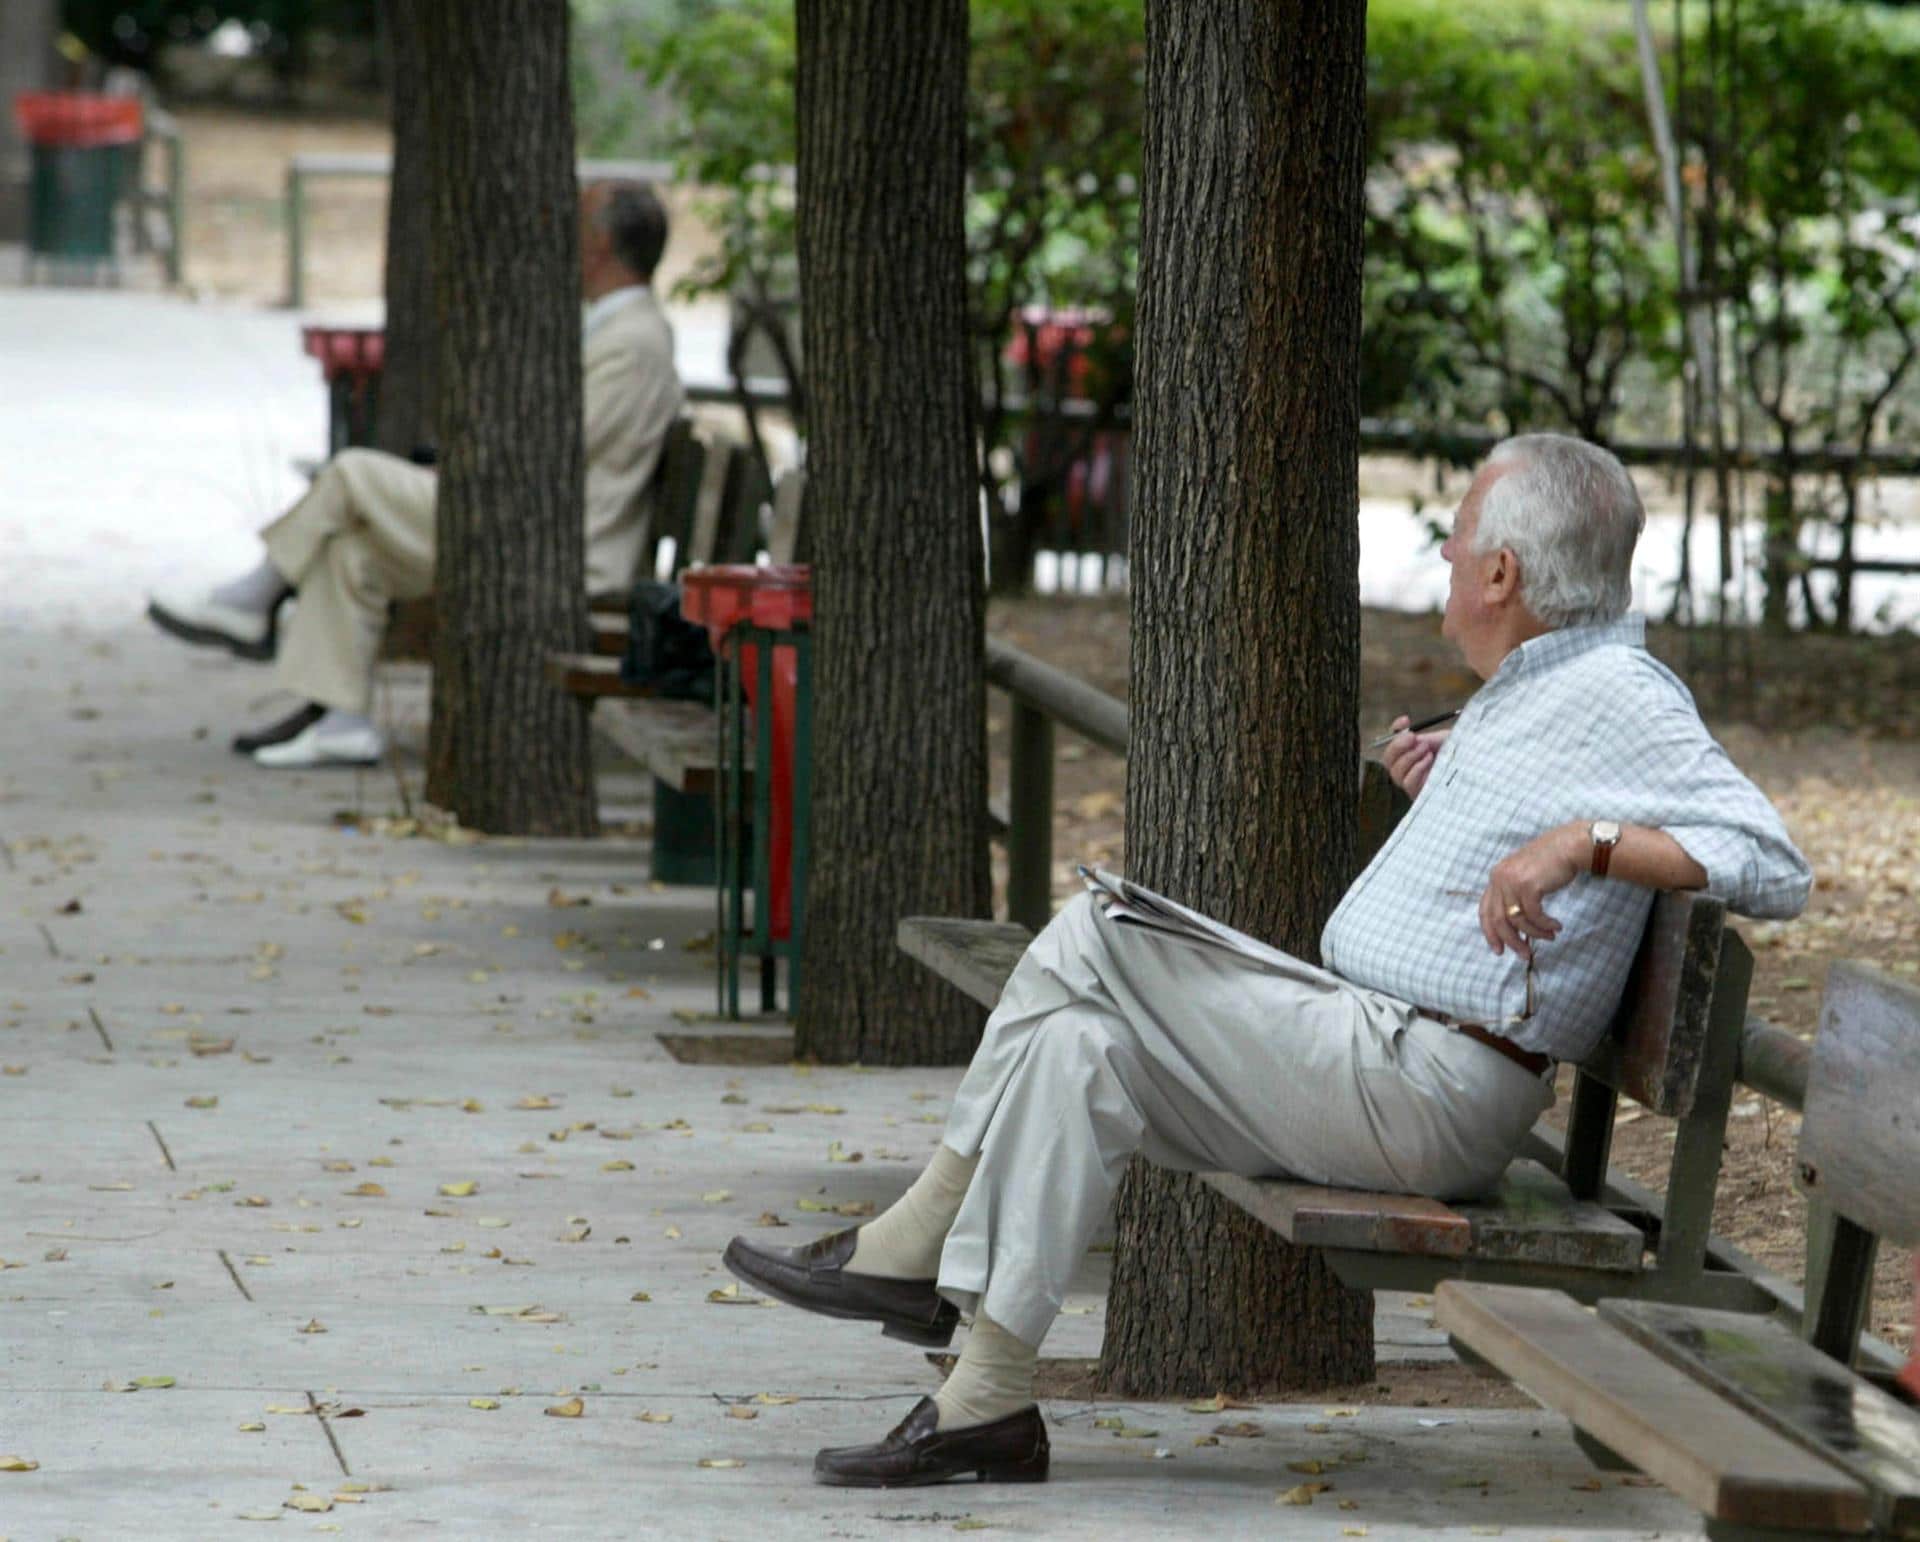 La pensión media en Comunitat es 957 euros, por debajo de la media española